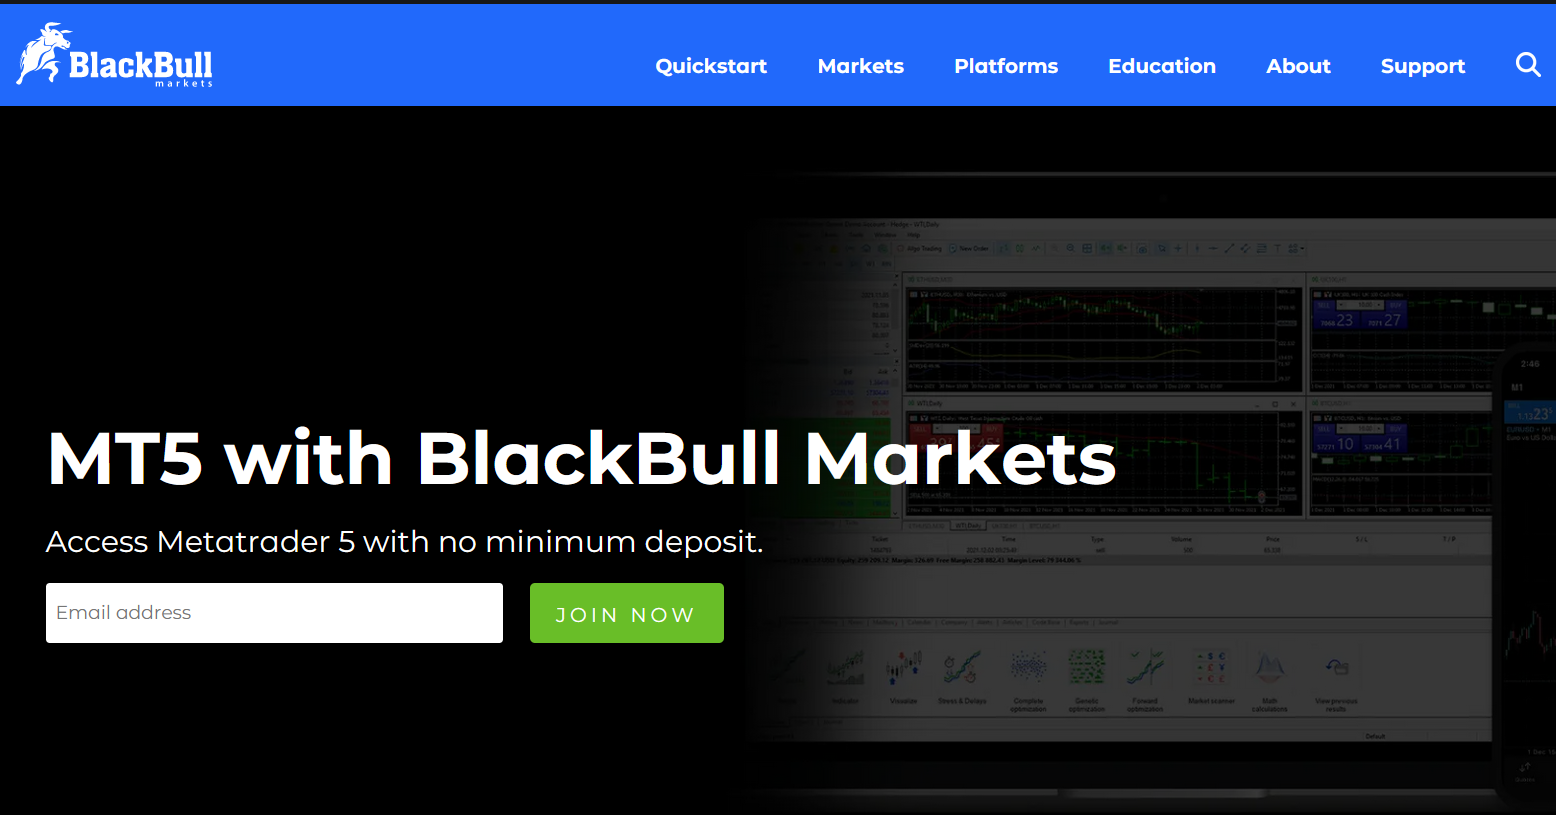 BlackBull Markets Website mit Infos zum MT5